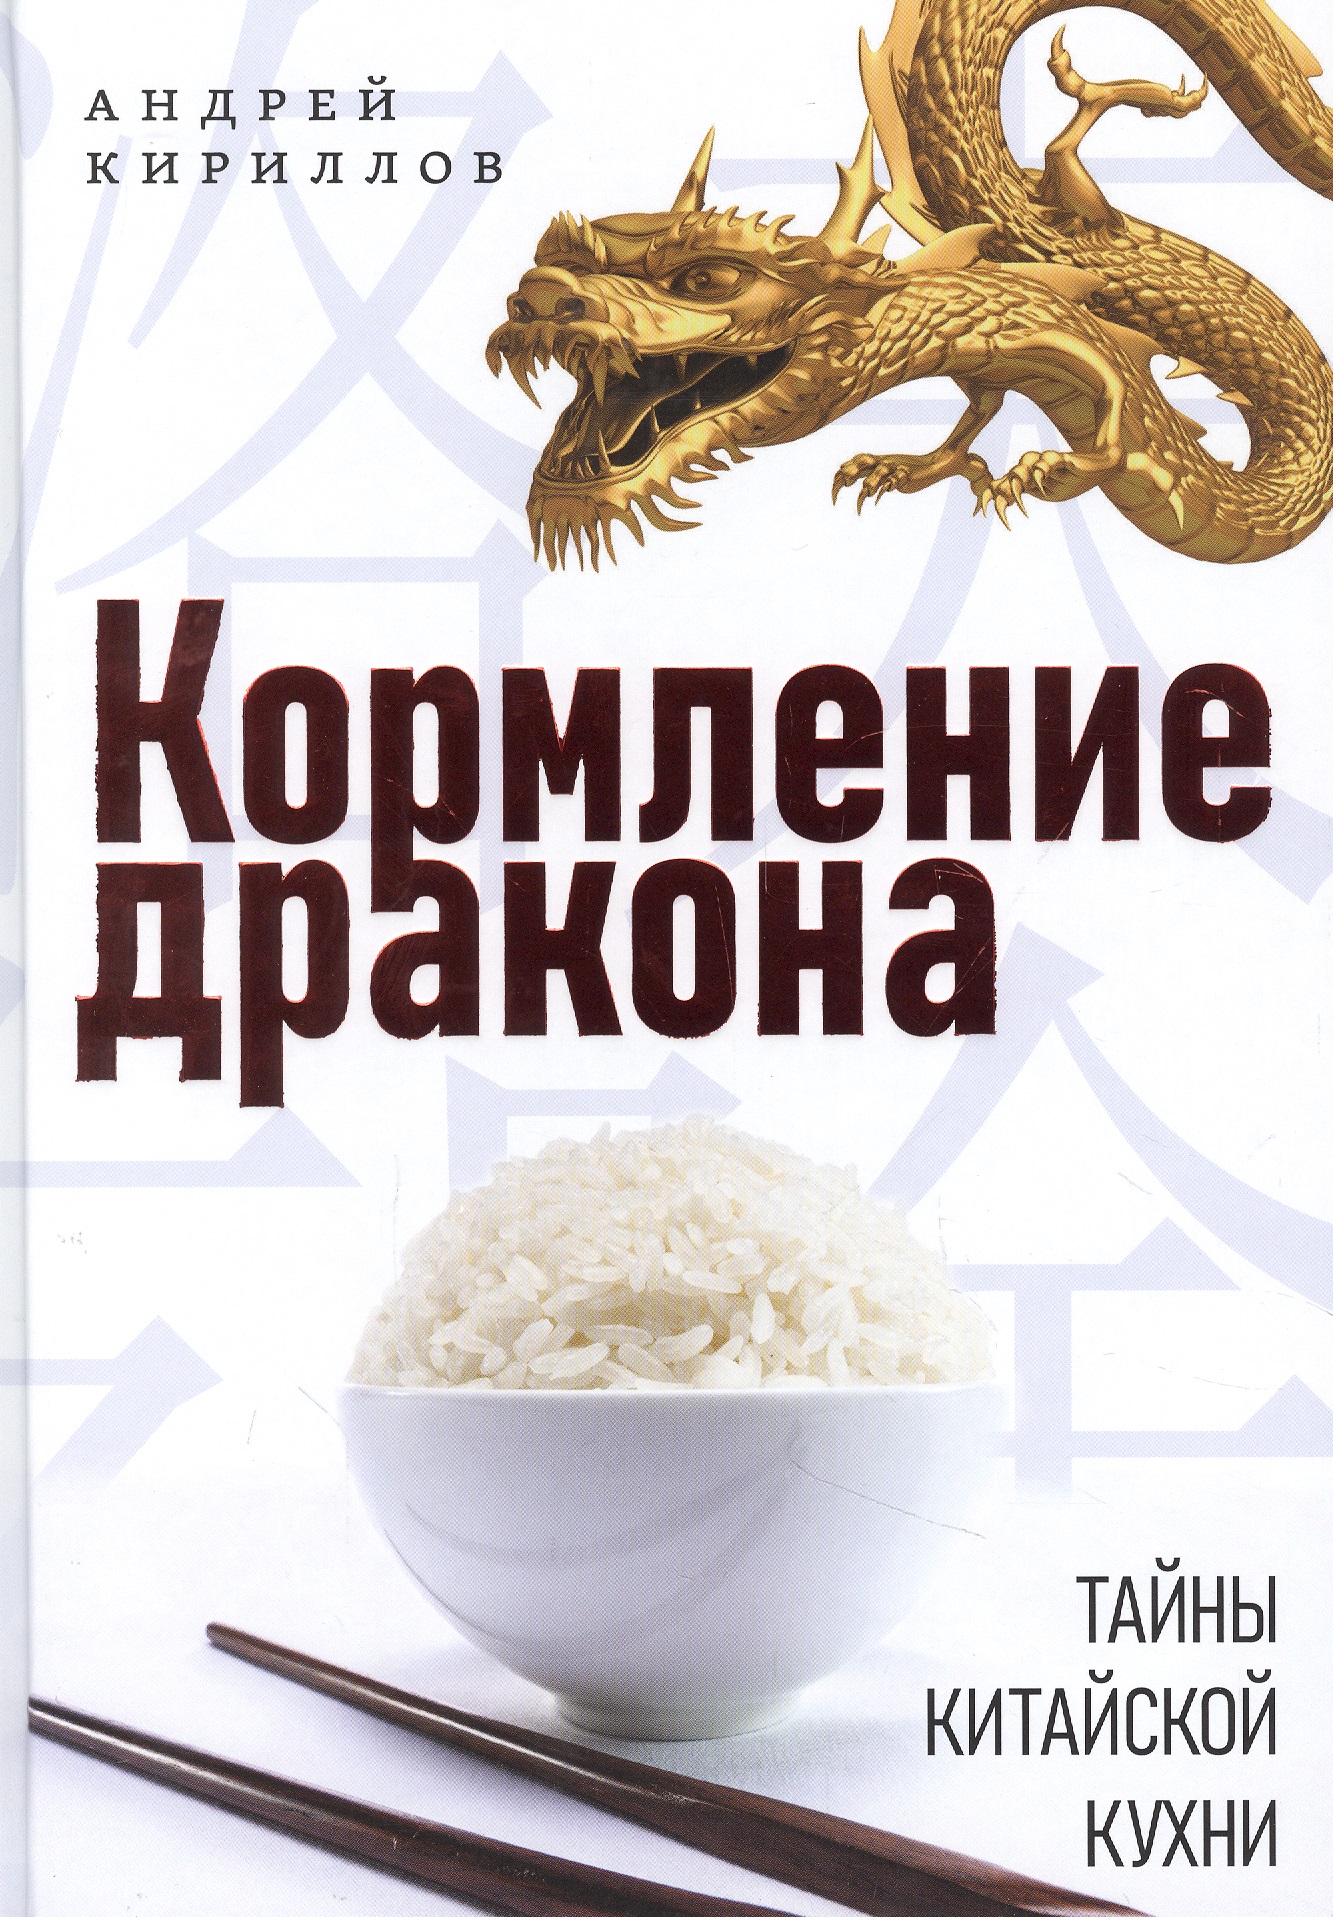 Кириллов Андрей - Кормление дракона: Тайны китайской кухни